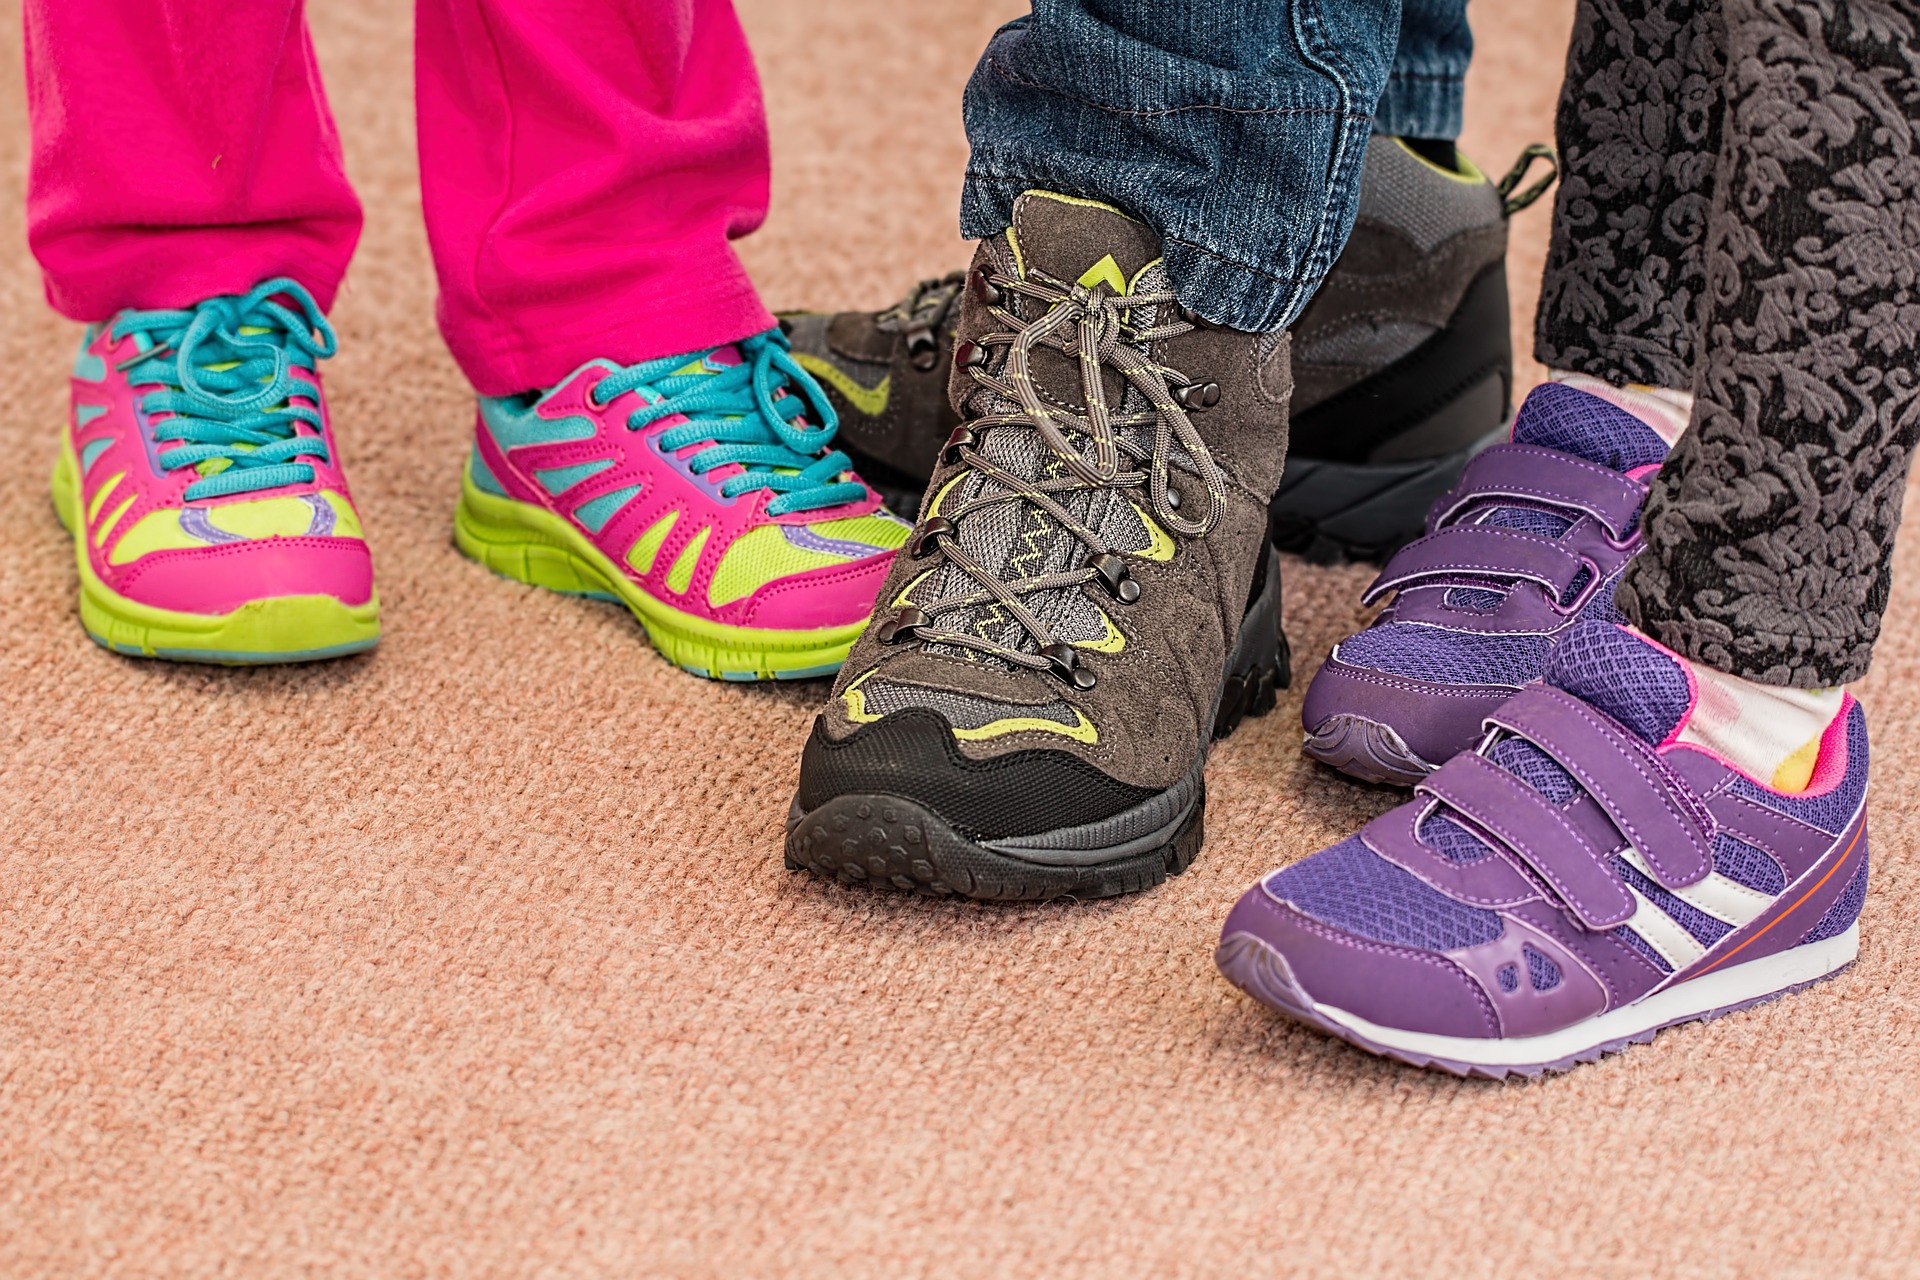 Comment choisir le bon soulier pour votre enfant?